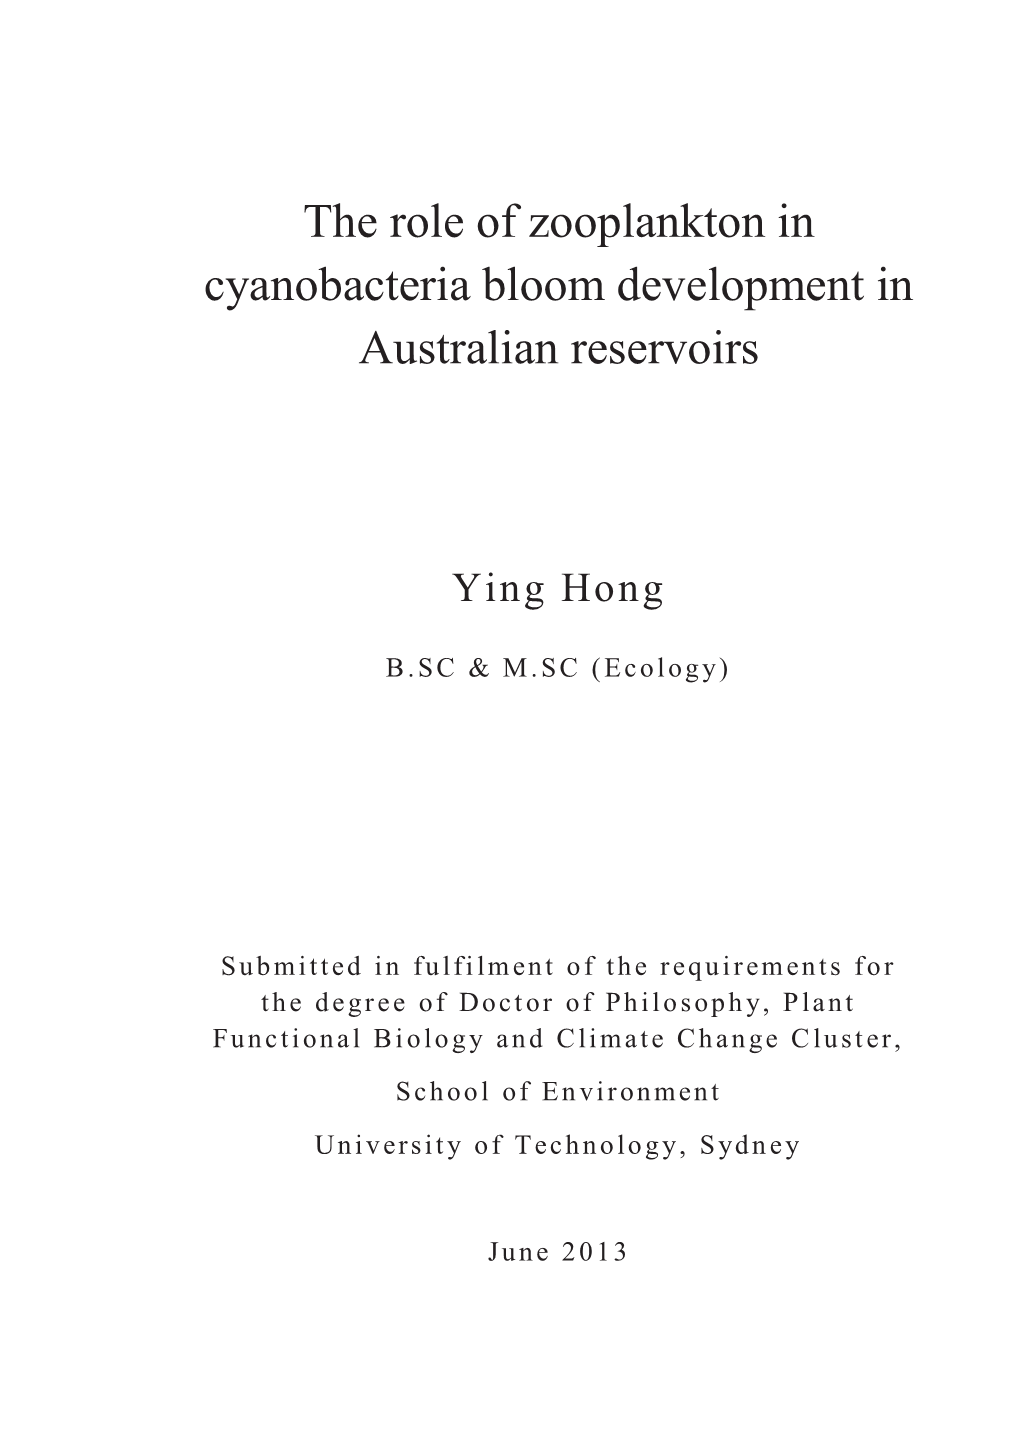 The Role of Zooplankton in Cyanobacteria Bloom Development in Australian Reservoirs